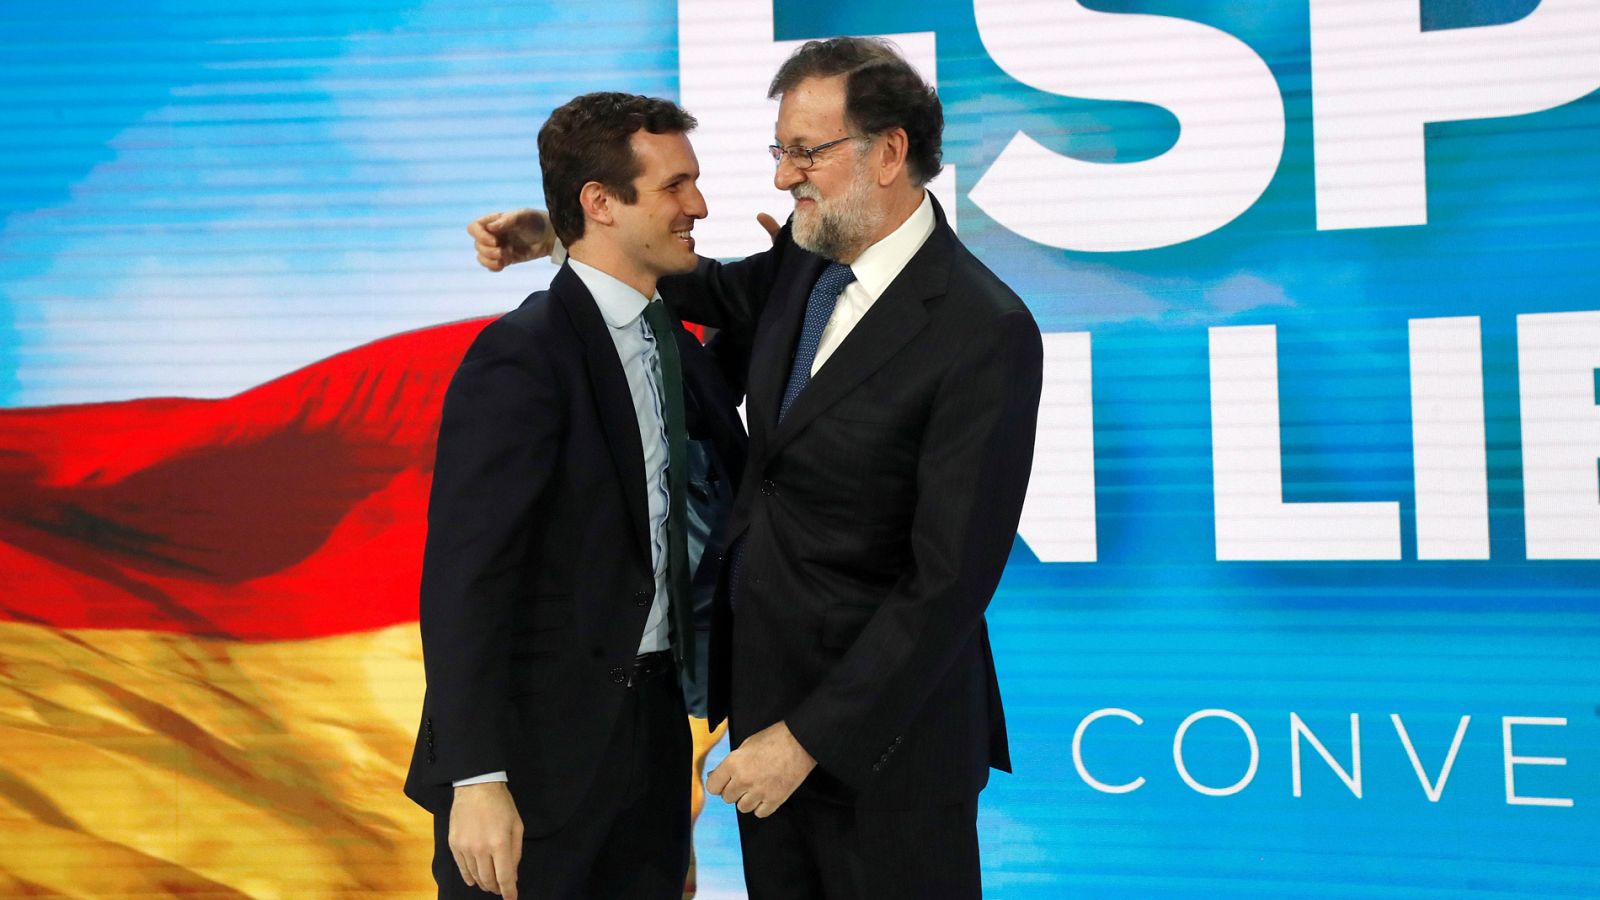 Convención ideológica del PP: Rajoy reaparece para reivindicar el PP contra "doctrinarios y sectarios" - RTVE.es 